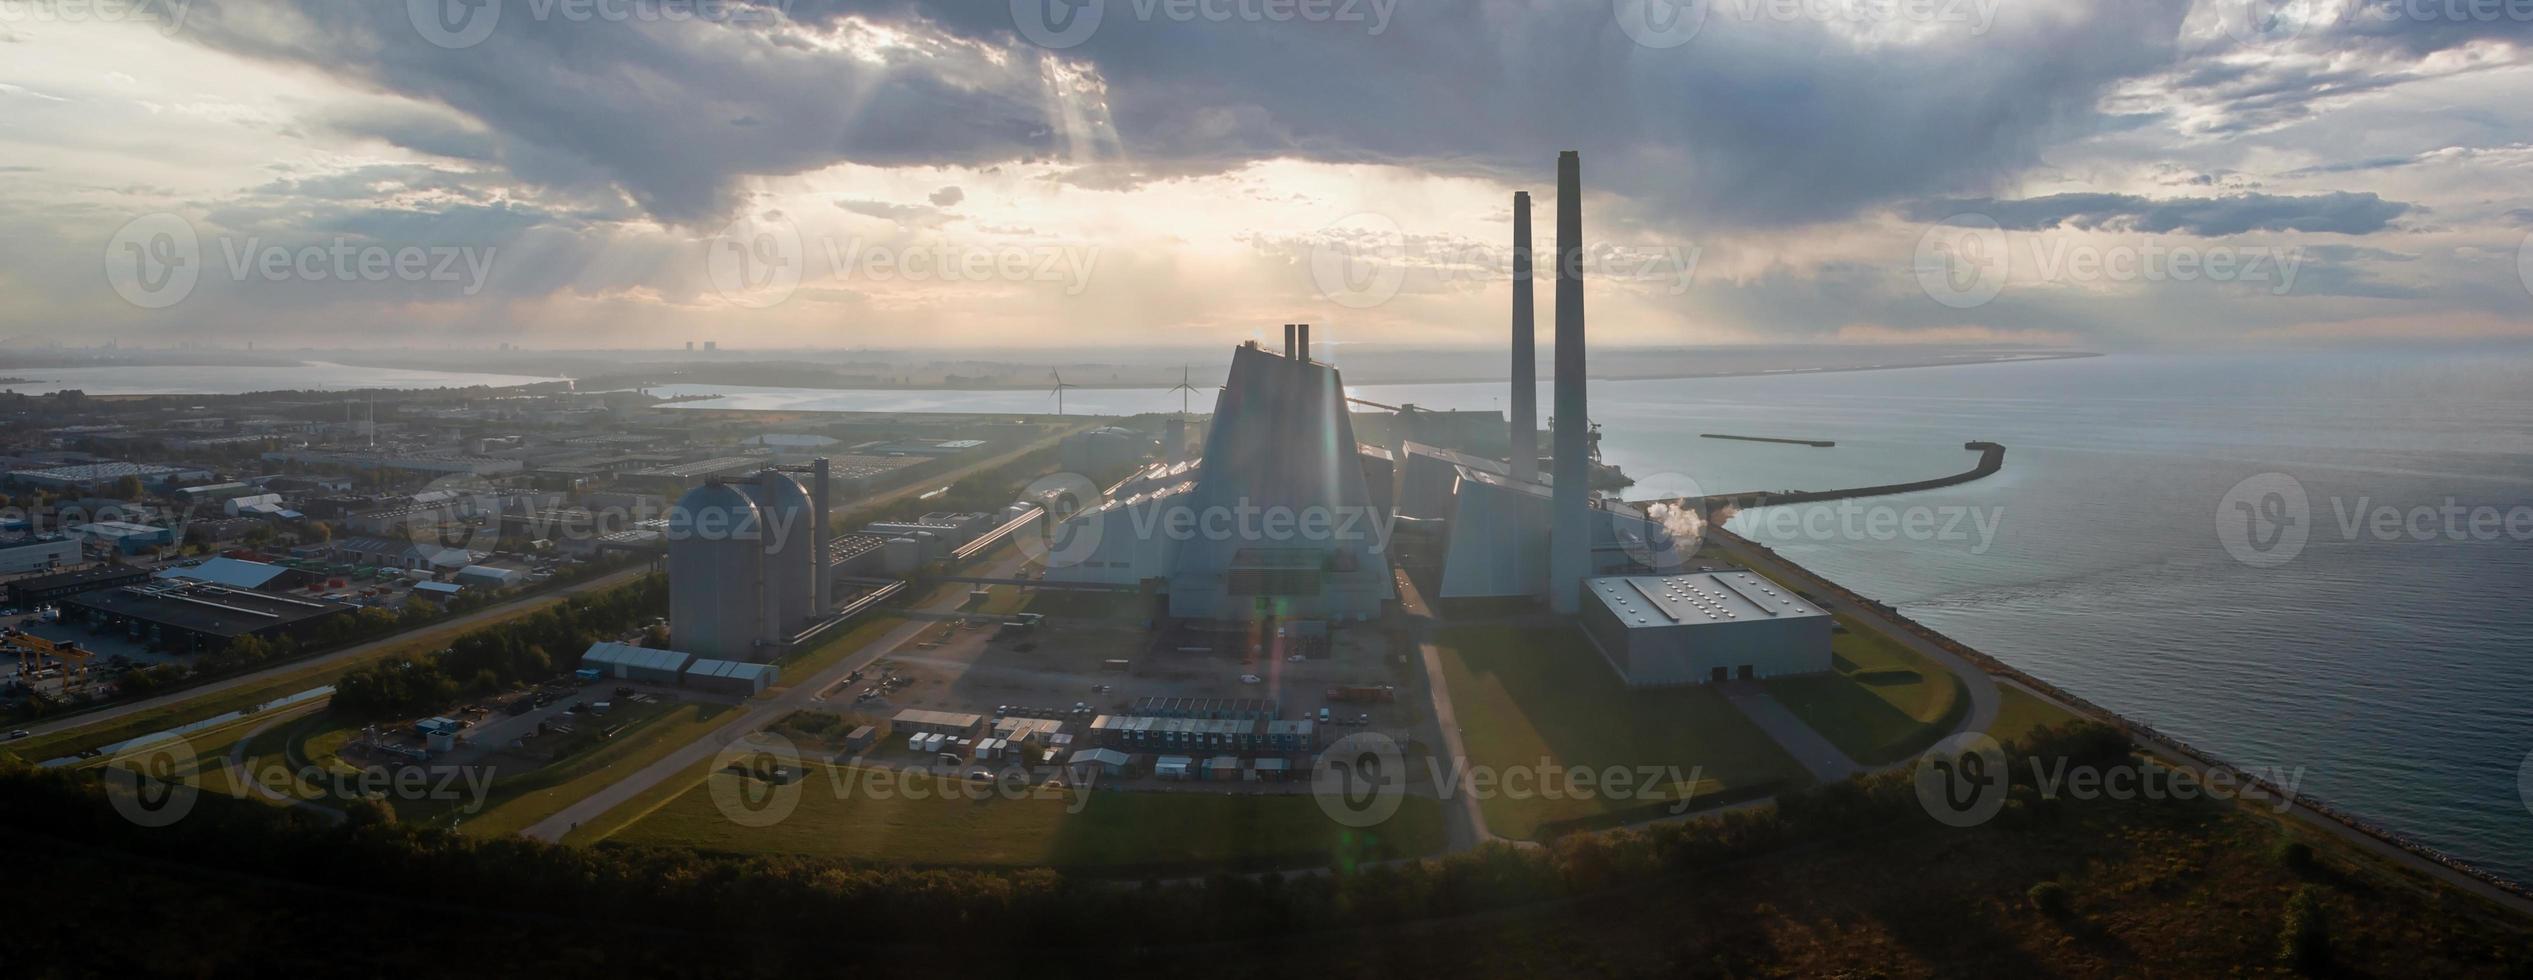 luchtfoto van de elektriciteitscentrale. een van de mooiste en meest milieuvriendelijke energiecentrales ter wereld. bv groene energie. foto